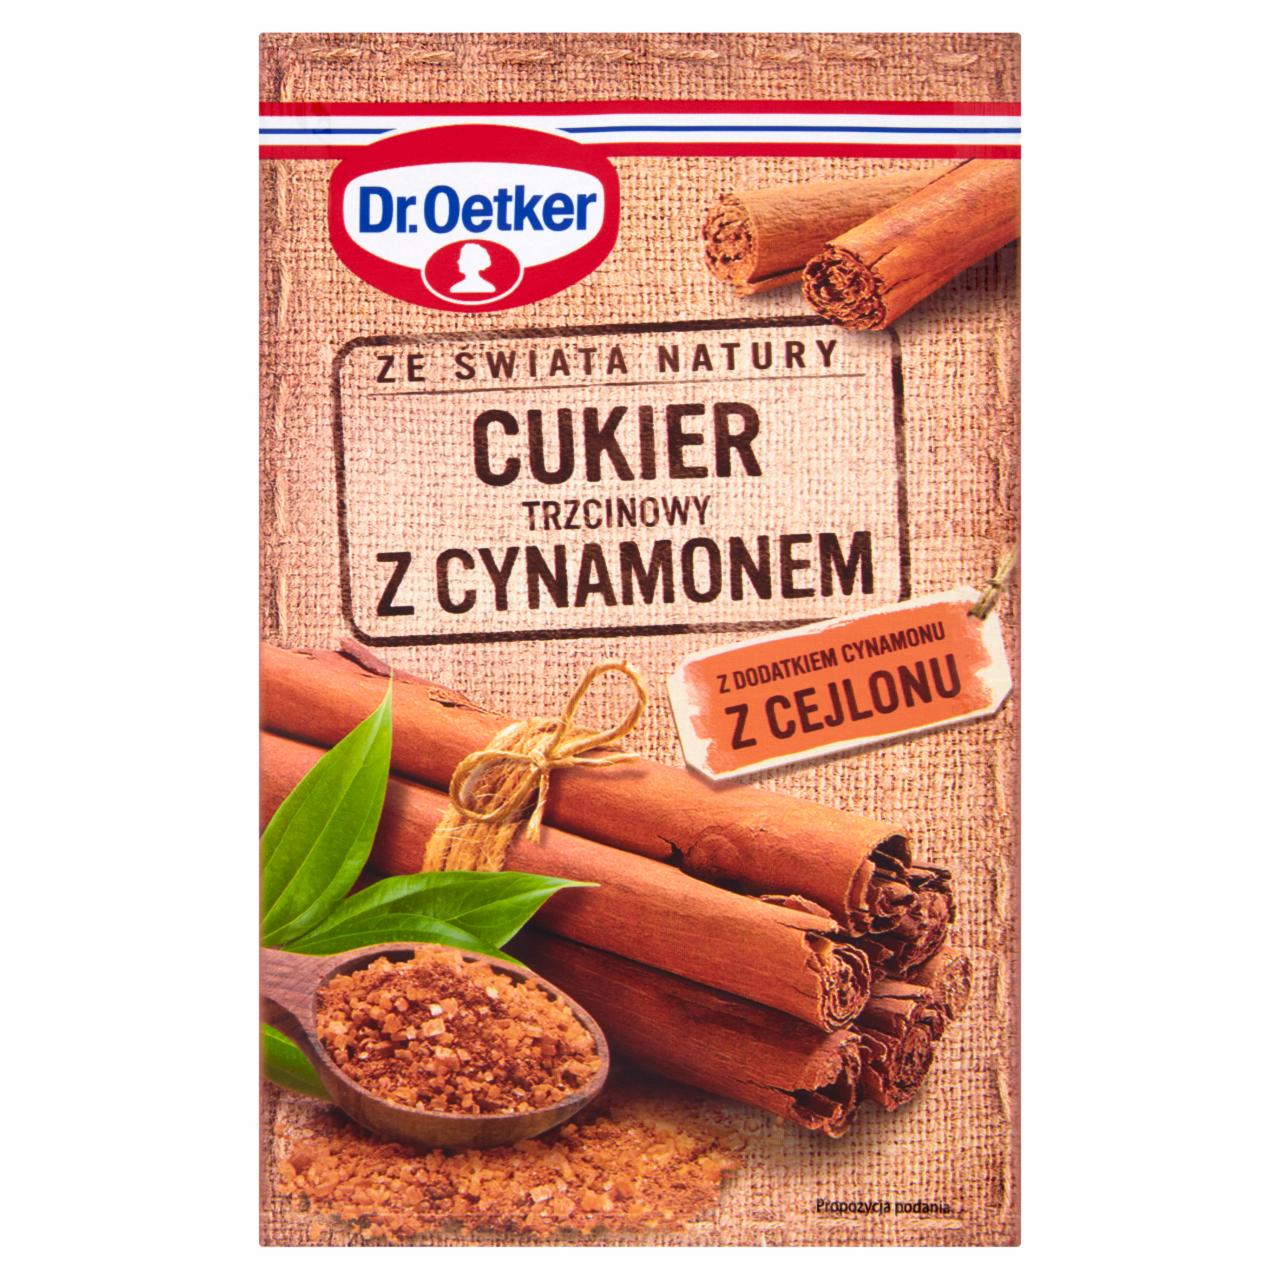 Zdjęcia - Dr. Oetker Ze świata natury Cukier trzcinowy z cynamonem 15 g